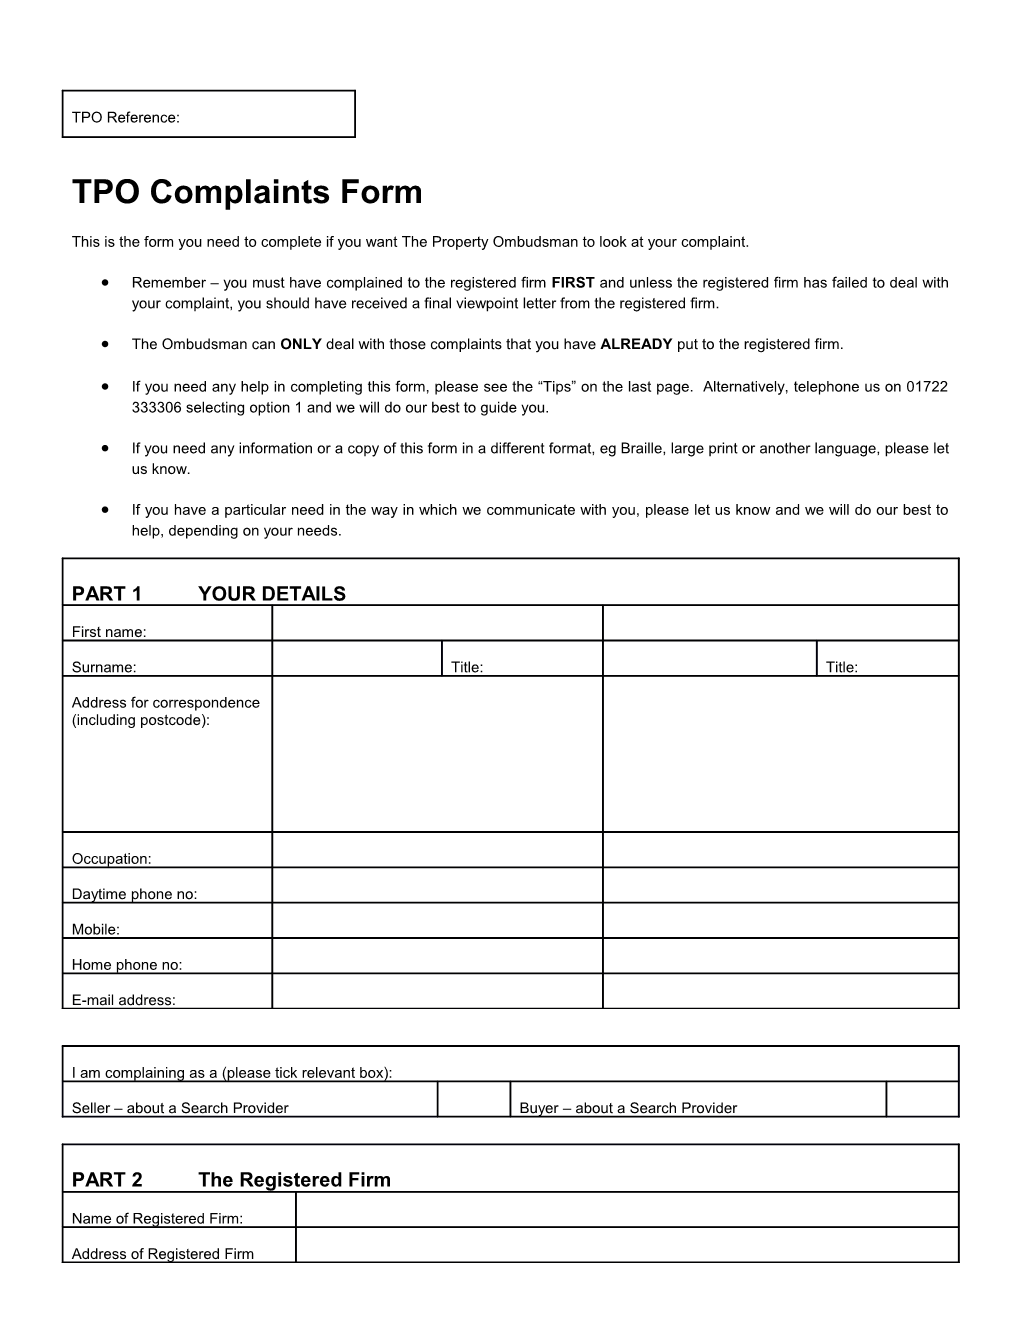 TPO Complaints Form